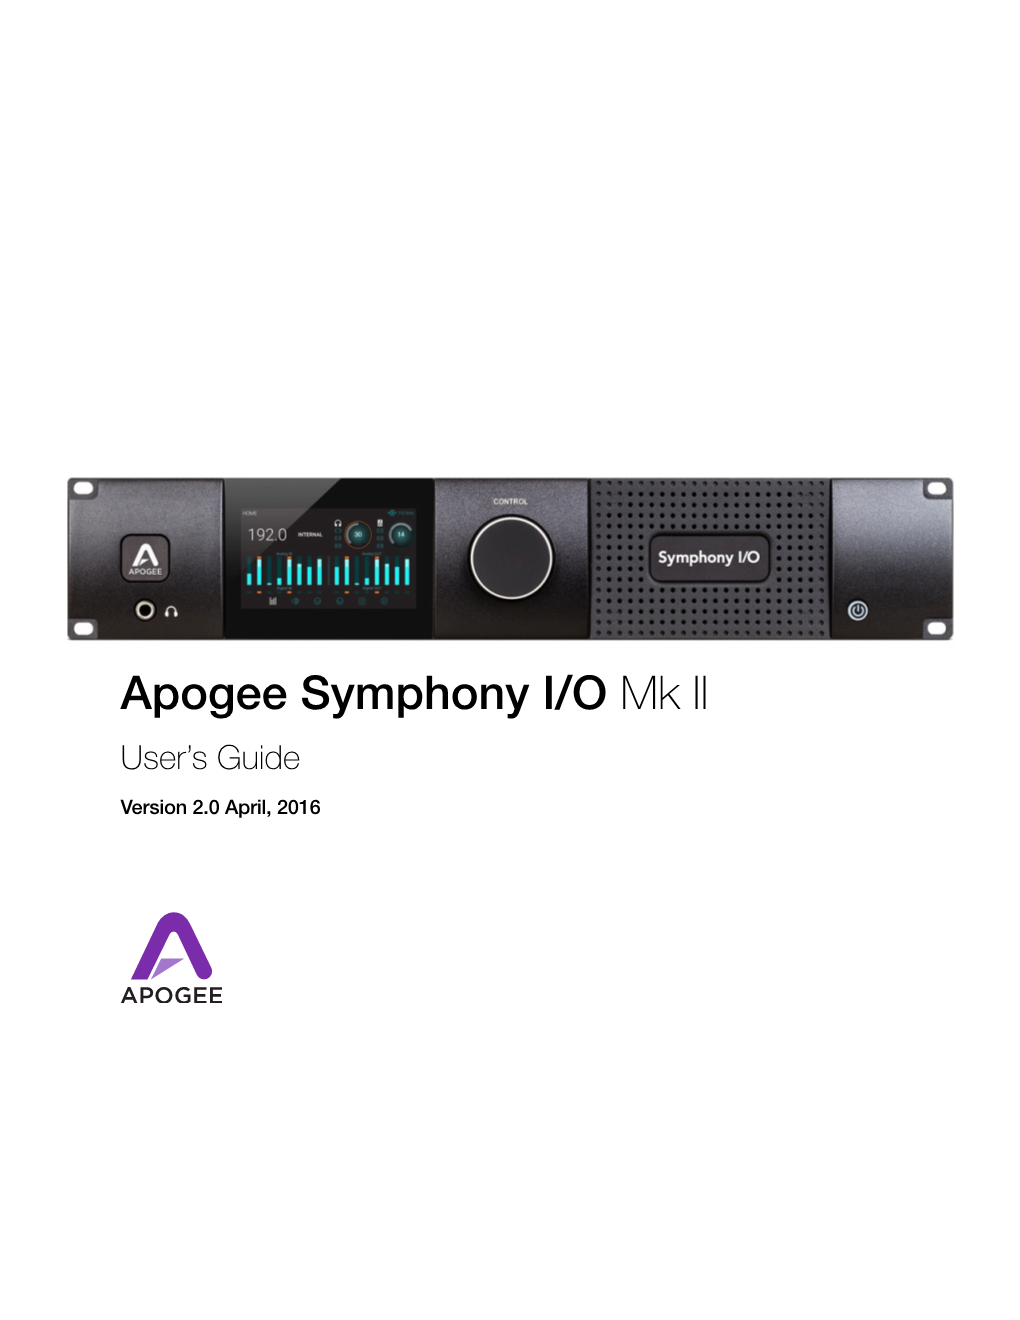 Apogee Symphony IO Mkii User Guide V2.0